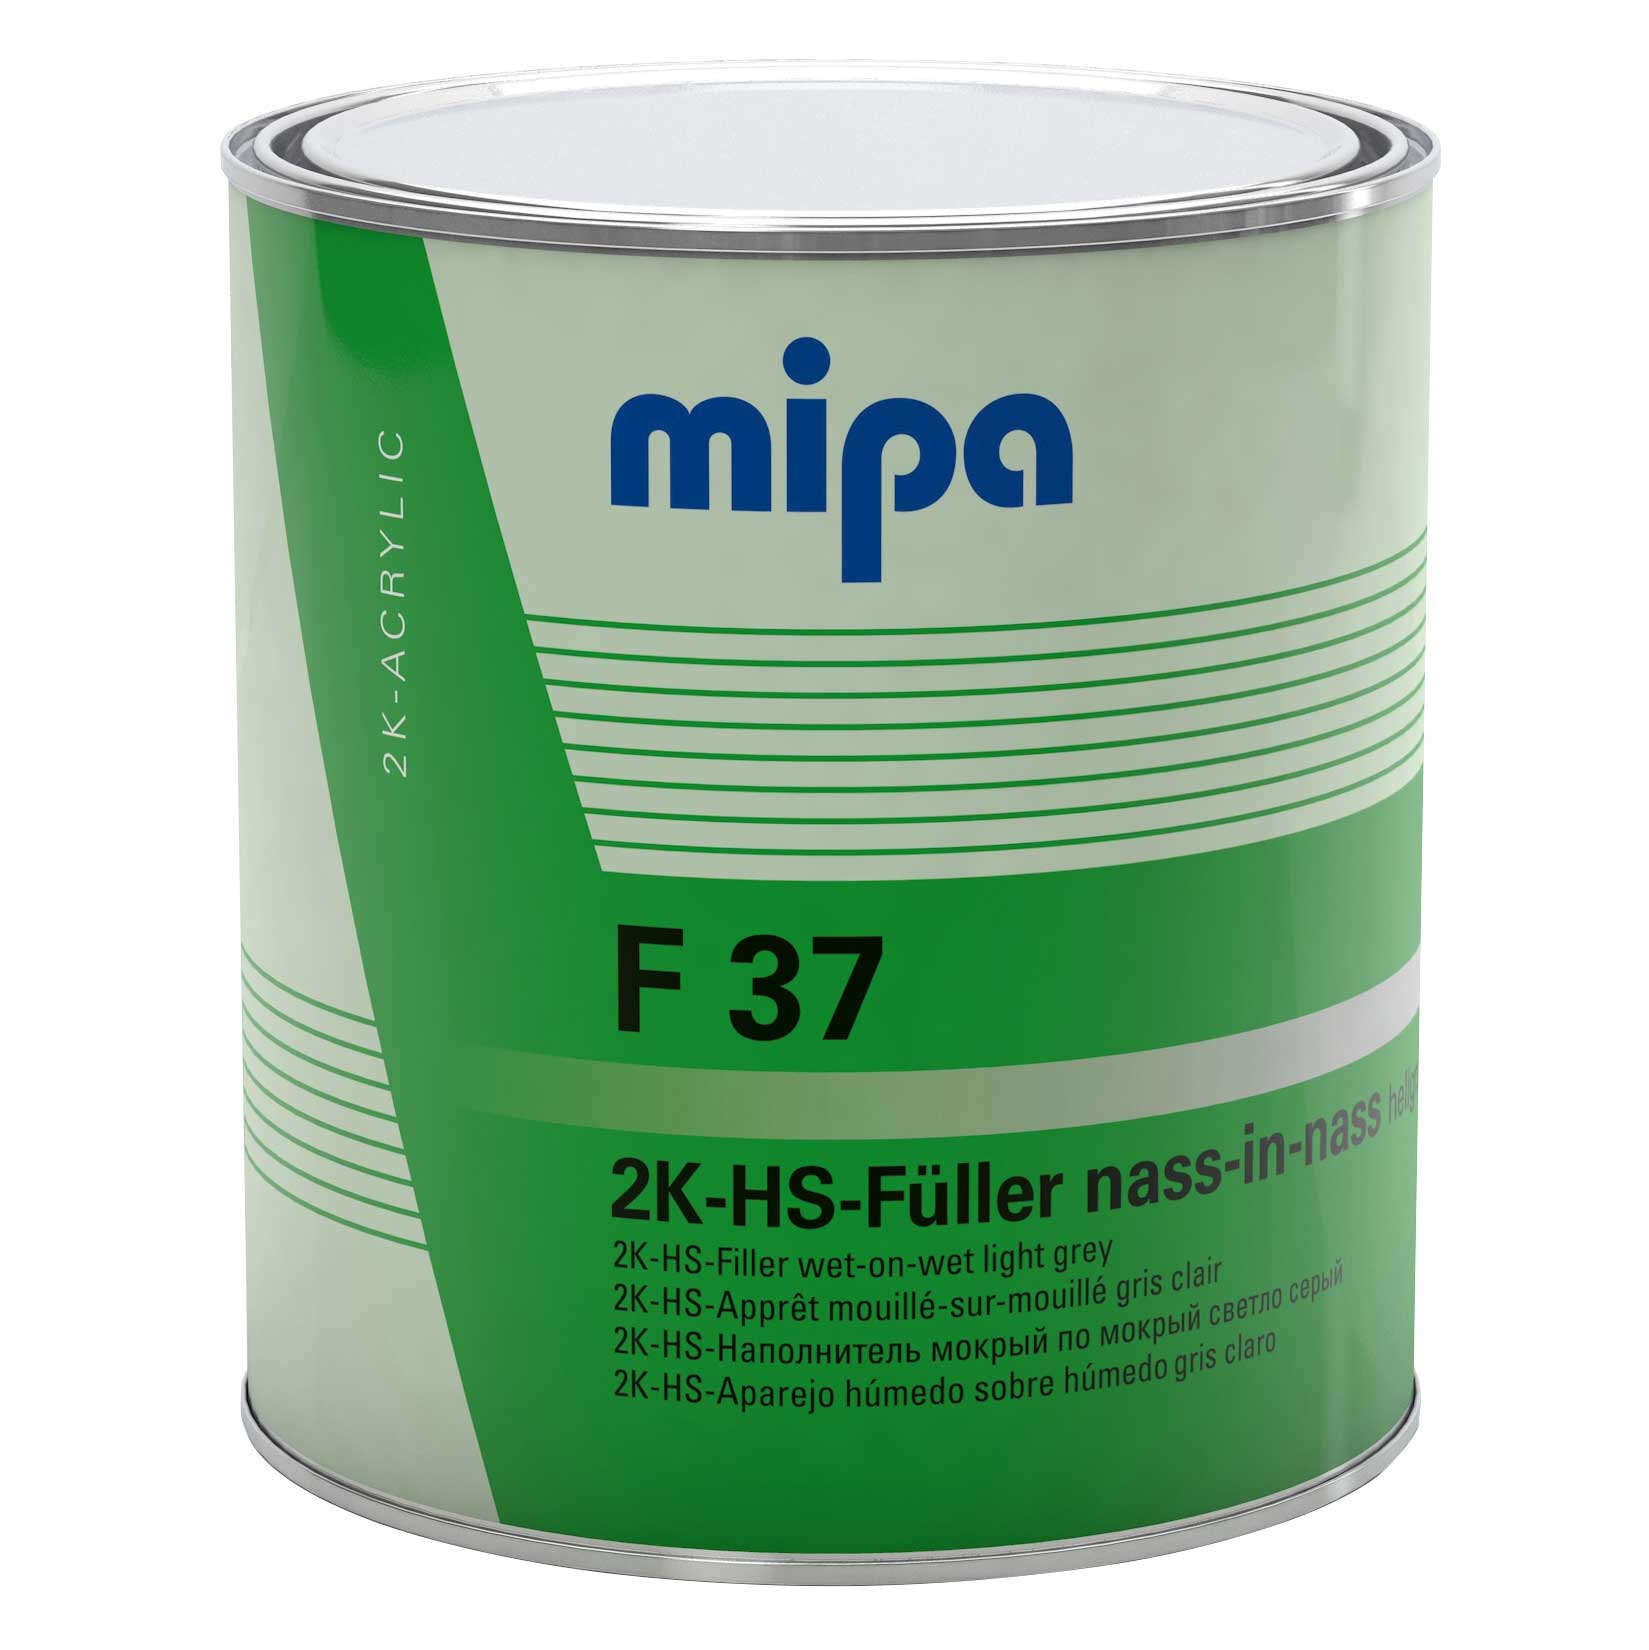 Mipa Füller 2K-HS-NiN-Füller F 37